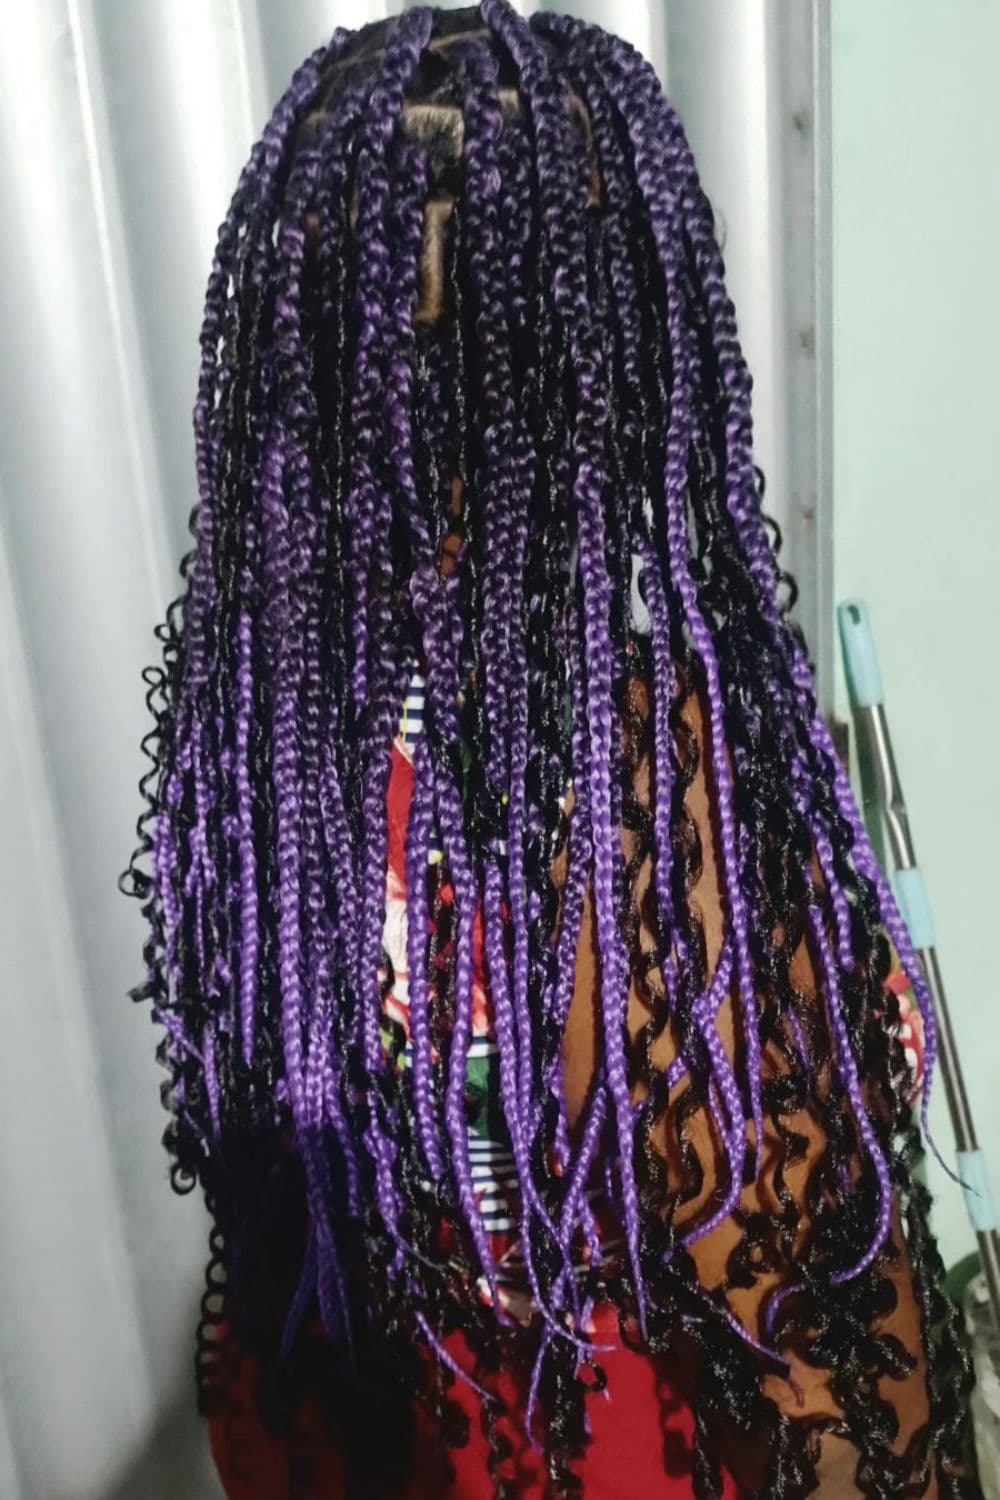 A woman with long purple goddess braids.